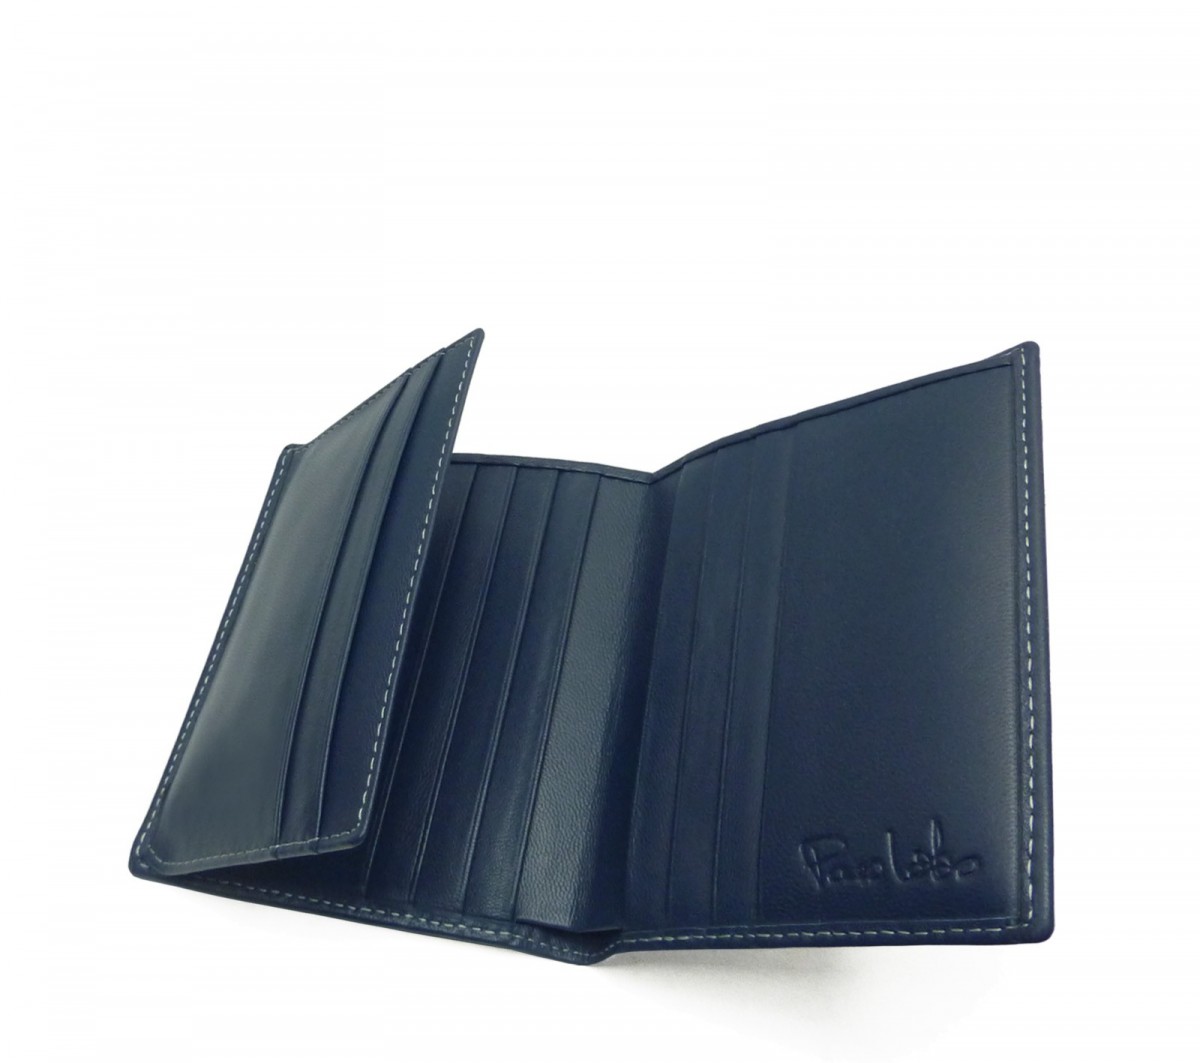 Wallet/cardholder plane